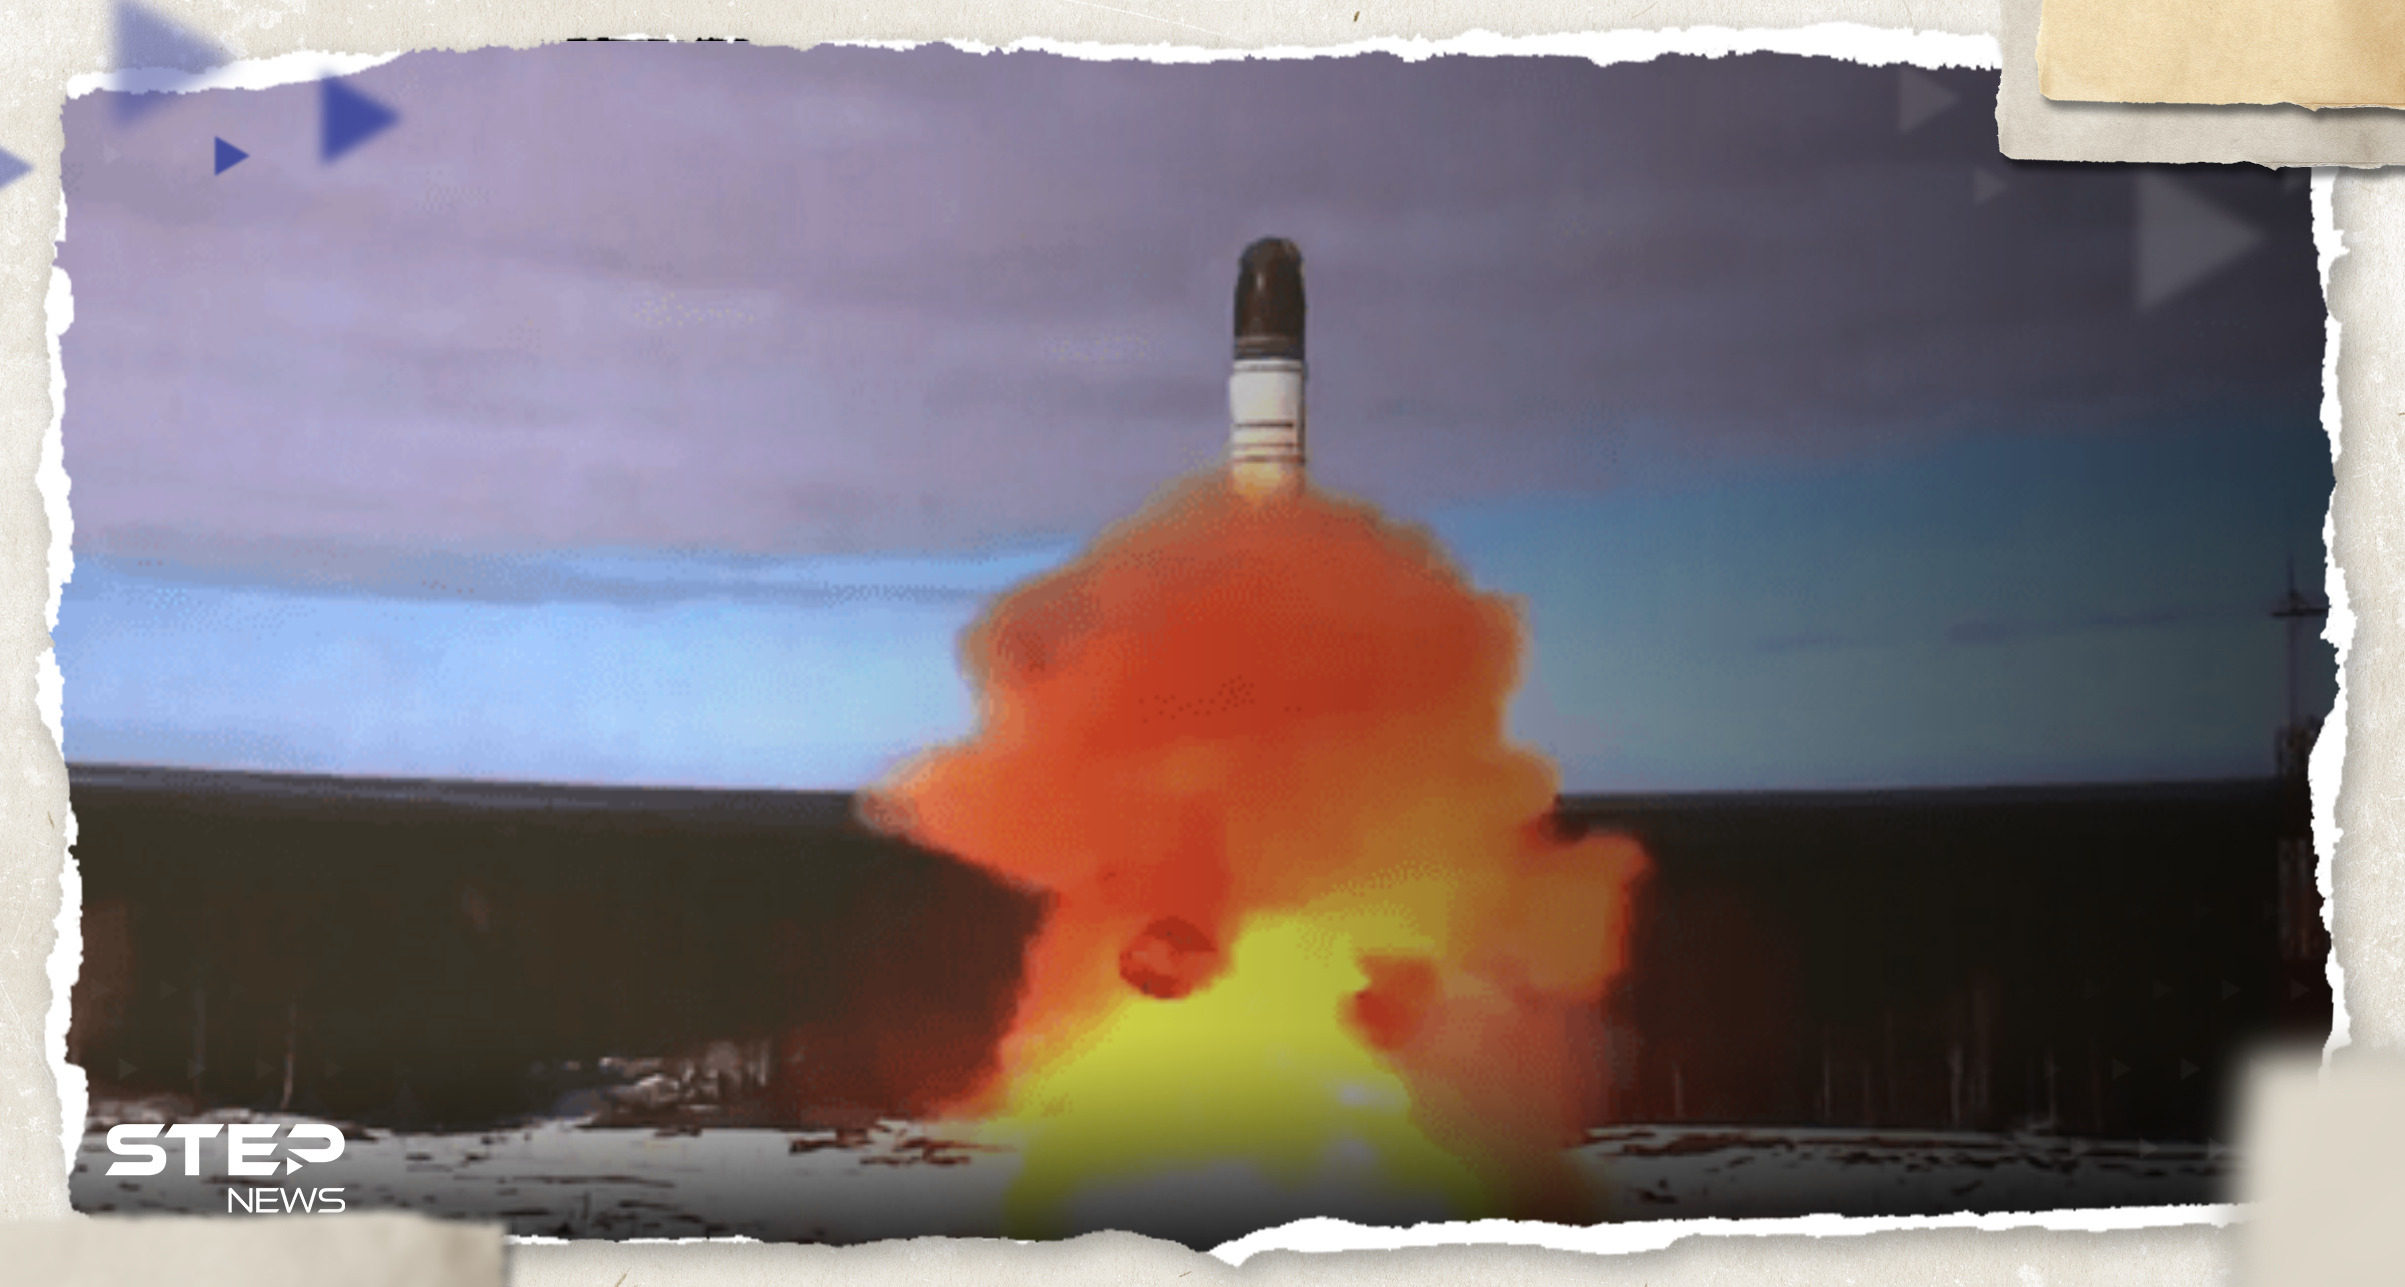 تقارير تكشف عن فشل تجربة "الشيطان 2" الصاروخية بروسيا في غفلة من العالم 